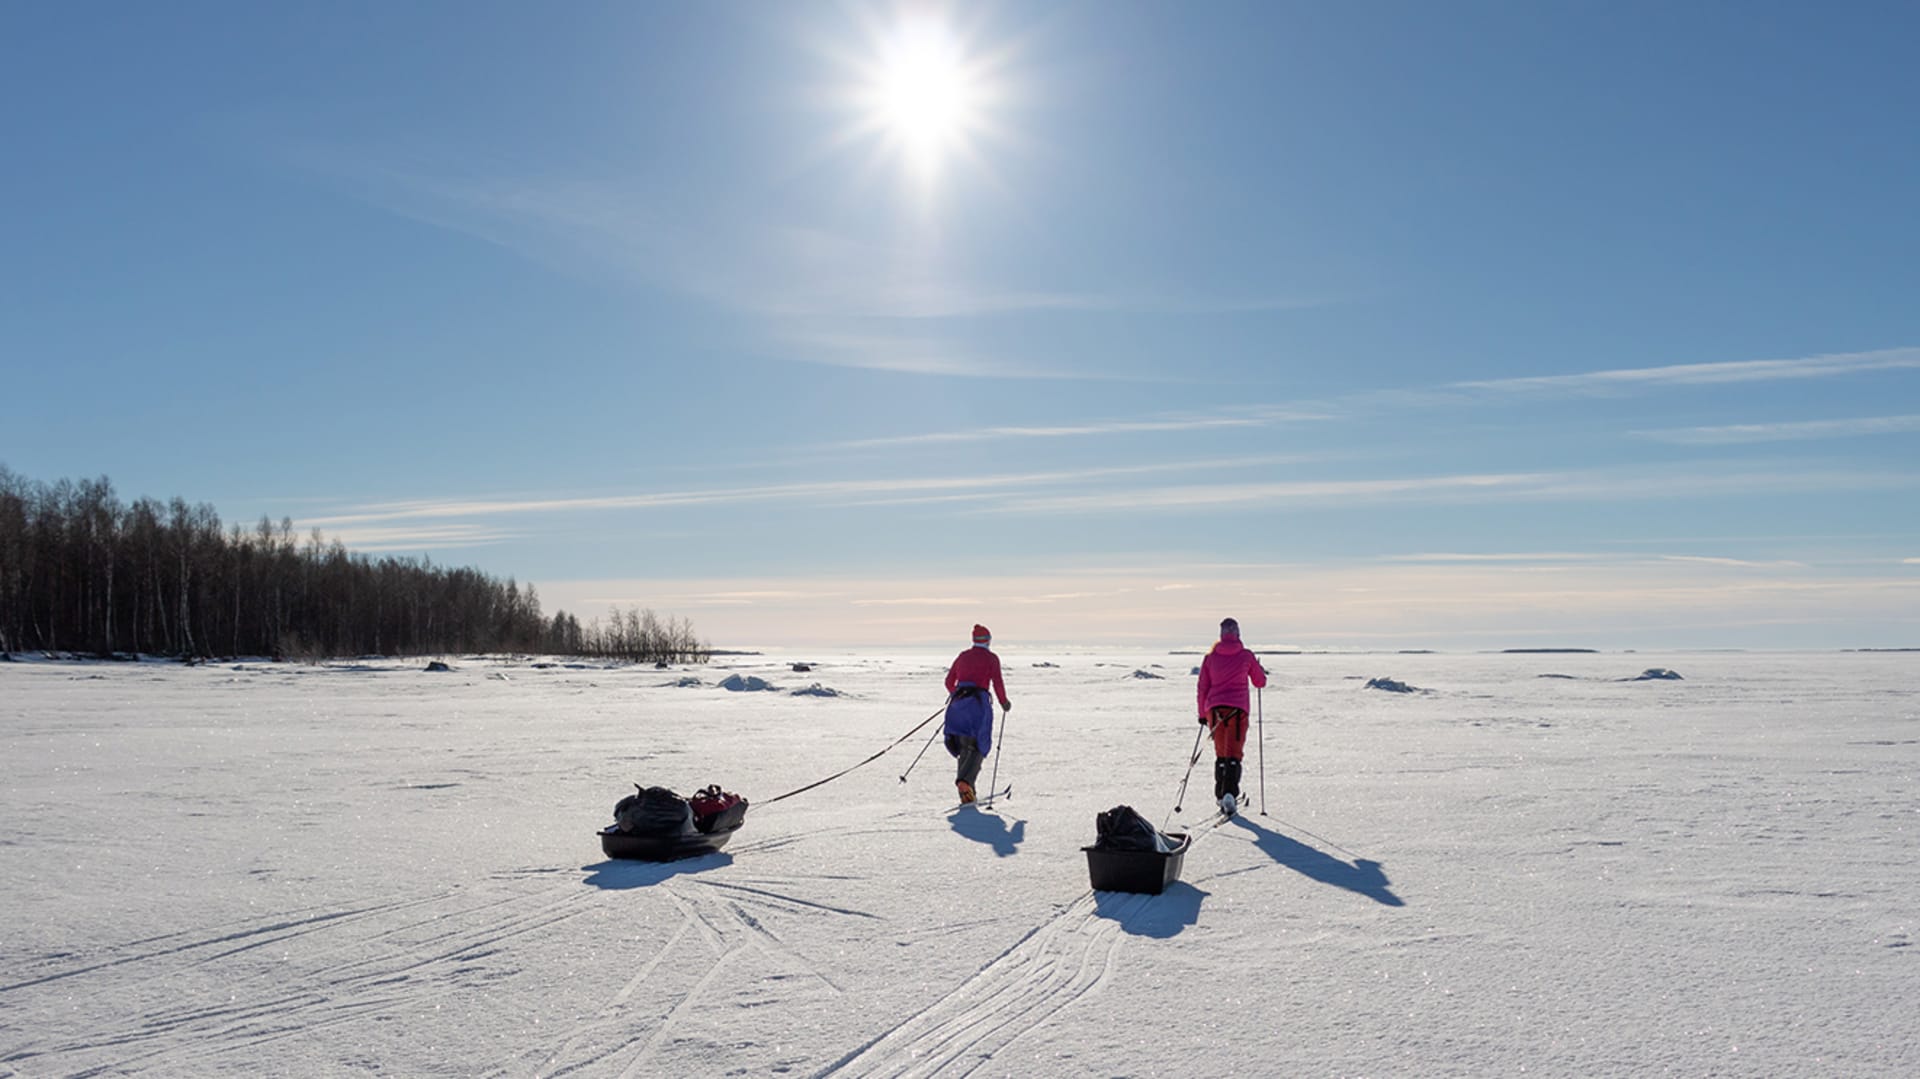 Kaksi hiihtäjää merenjäällä perässään ahkiot. Aurinko paistaa pilvettömältä taivaalta. /  Two skiers on sea ice with packs behind them. The sun shines from a cloudless sky. Kuva: Sini Salmirinne